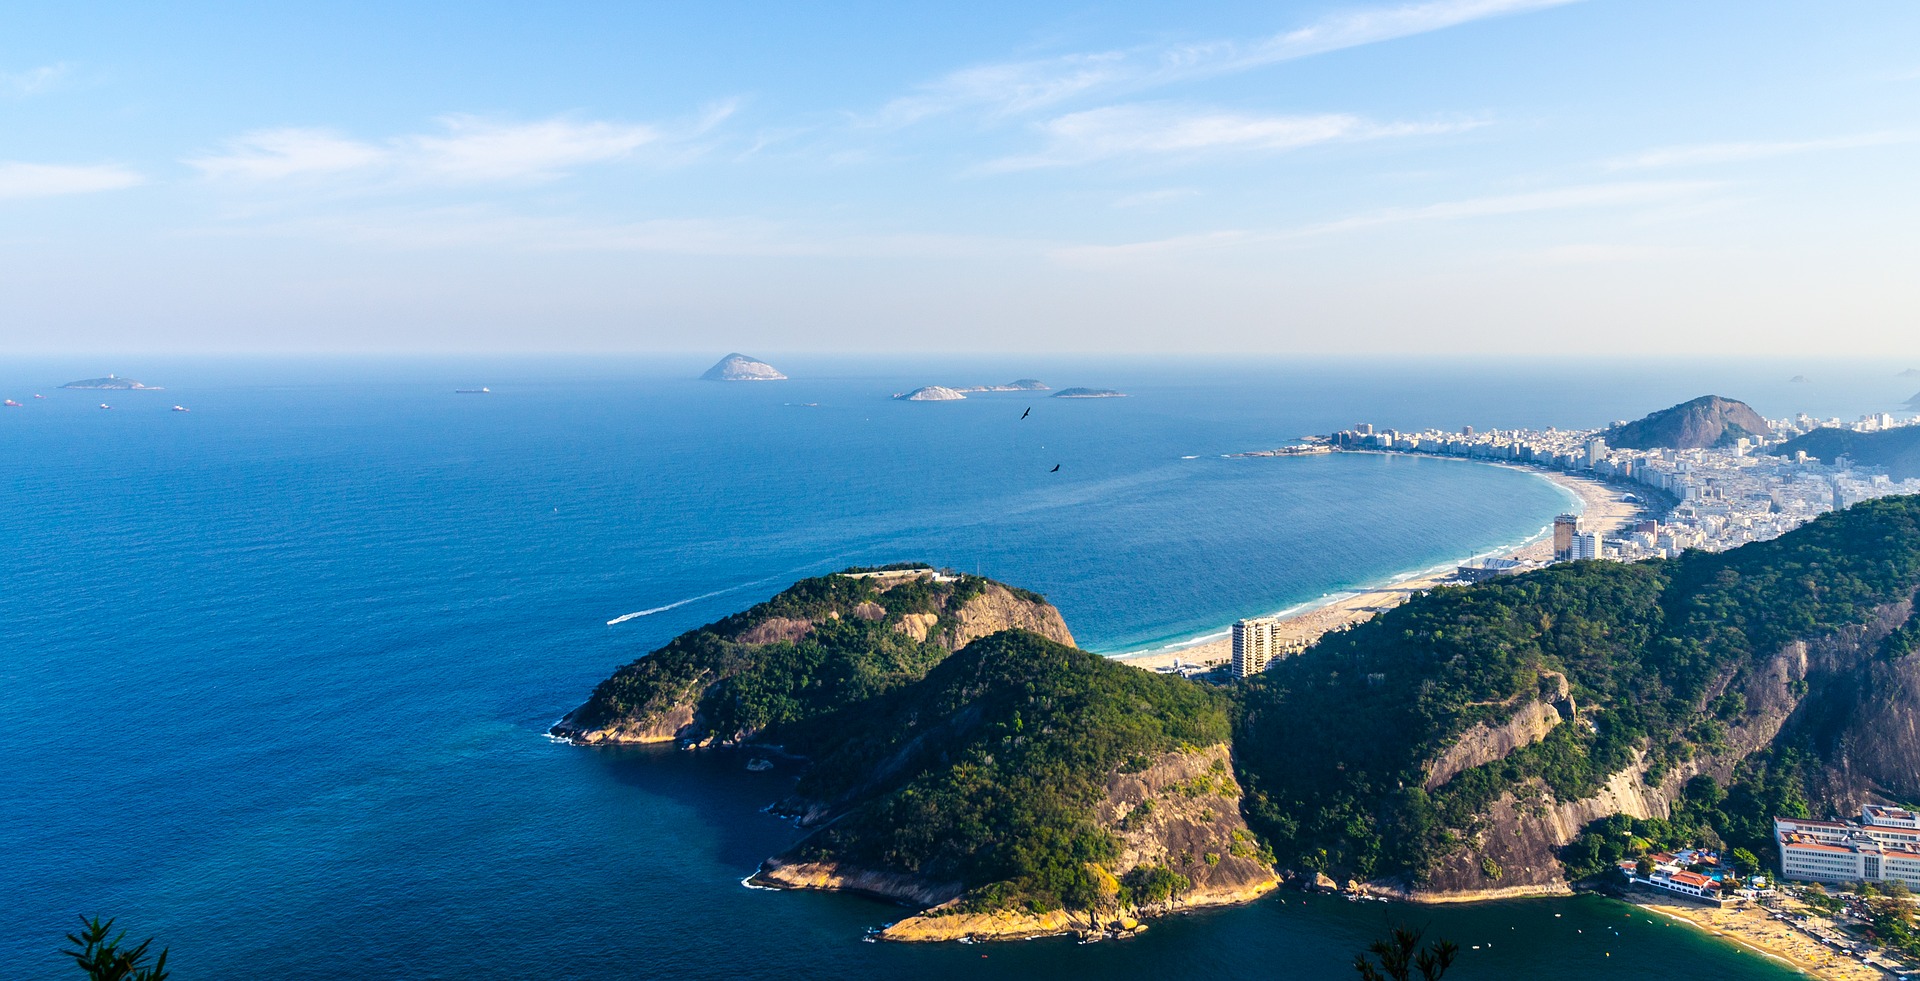 Der berühmte Zuckerhut bei Rio de Janeiro